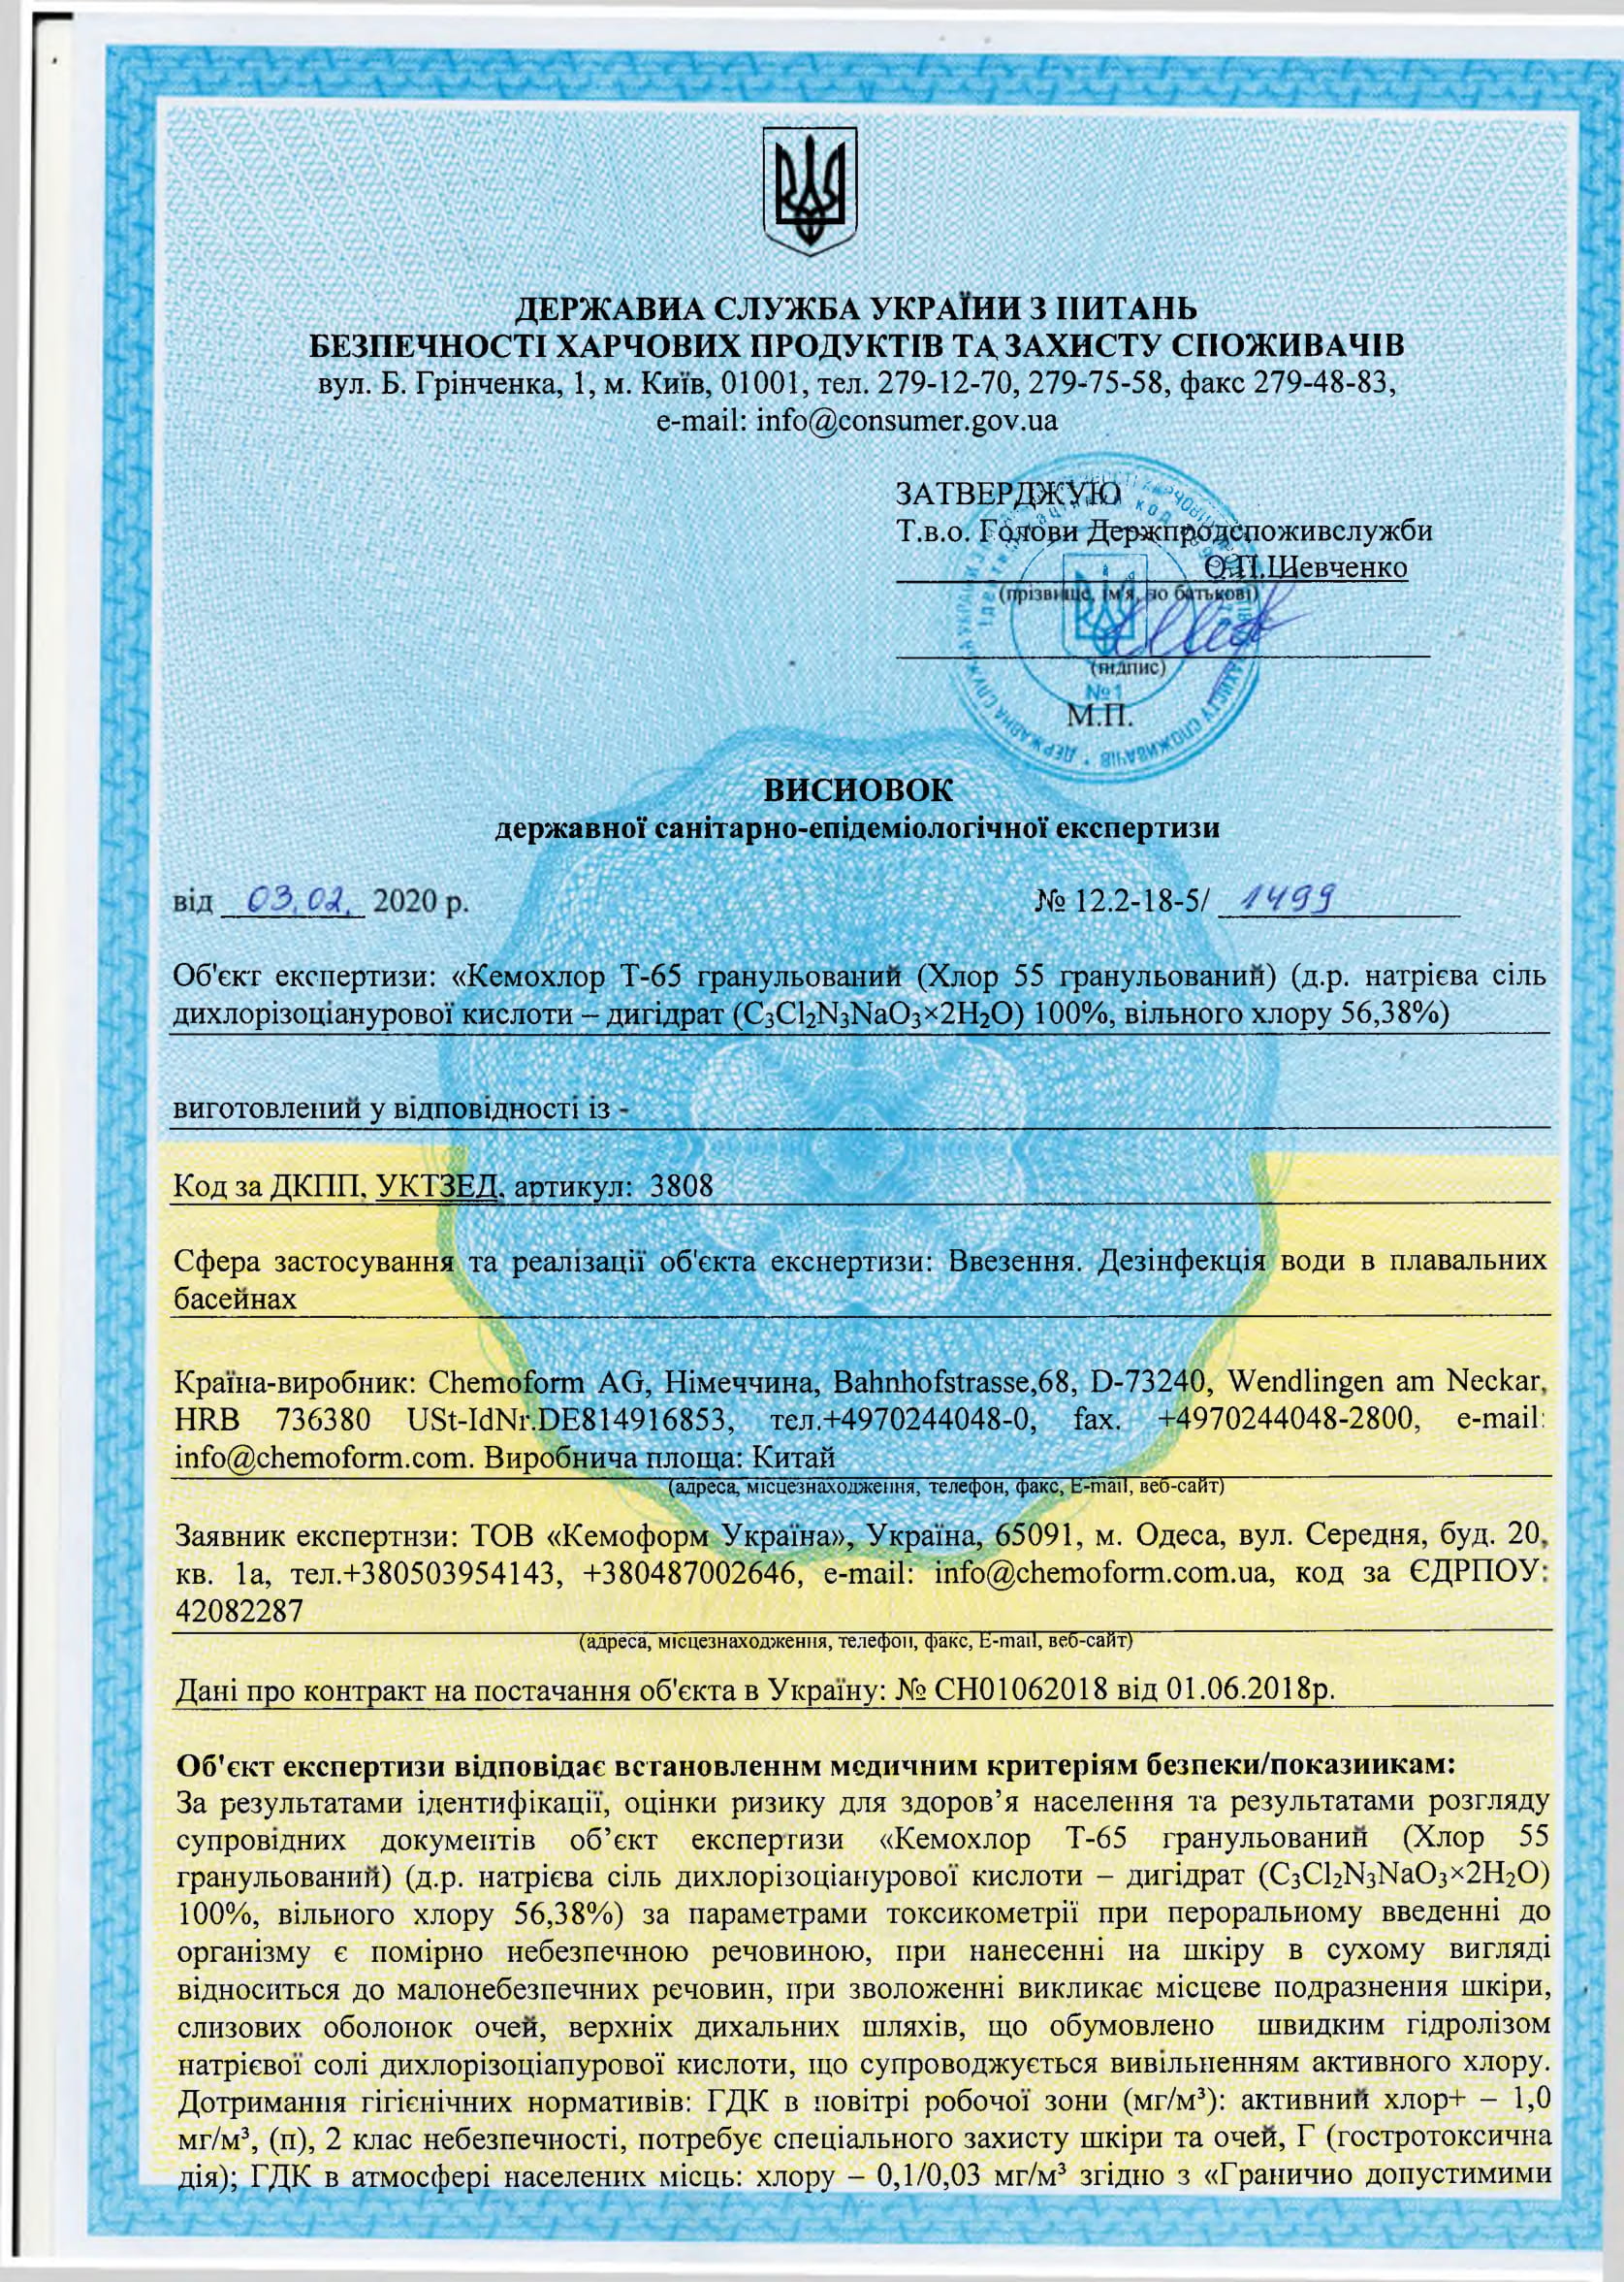 Кемохлор Т-65 гранулированный Chemoform, продавец Евроминерал Украина